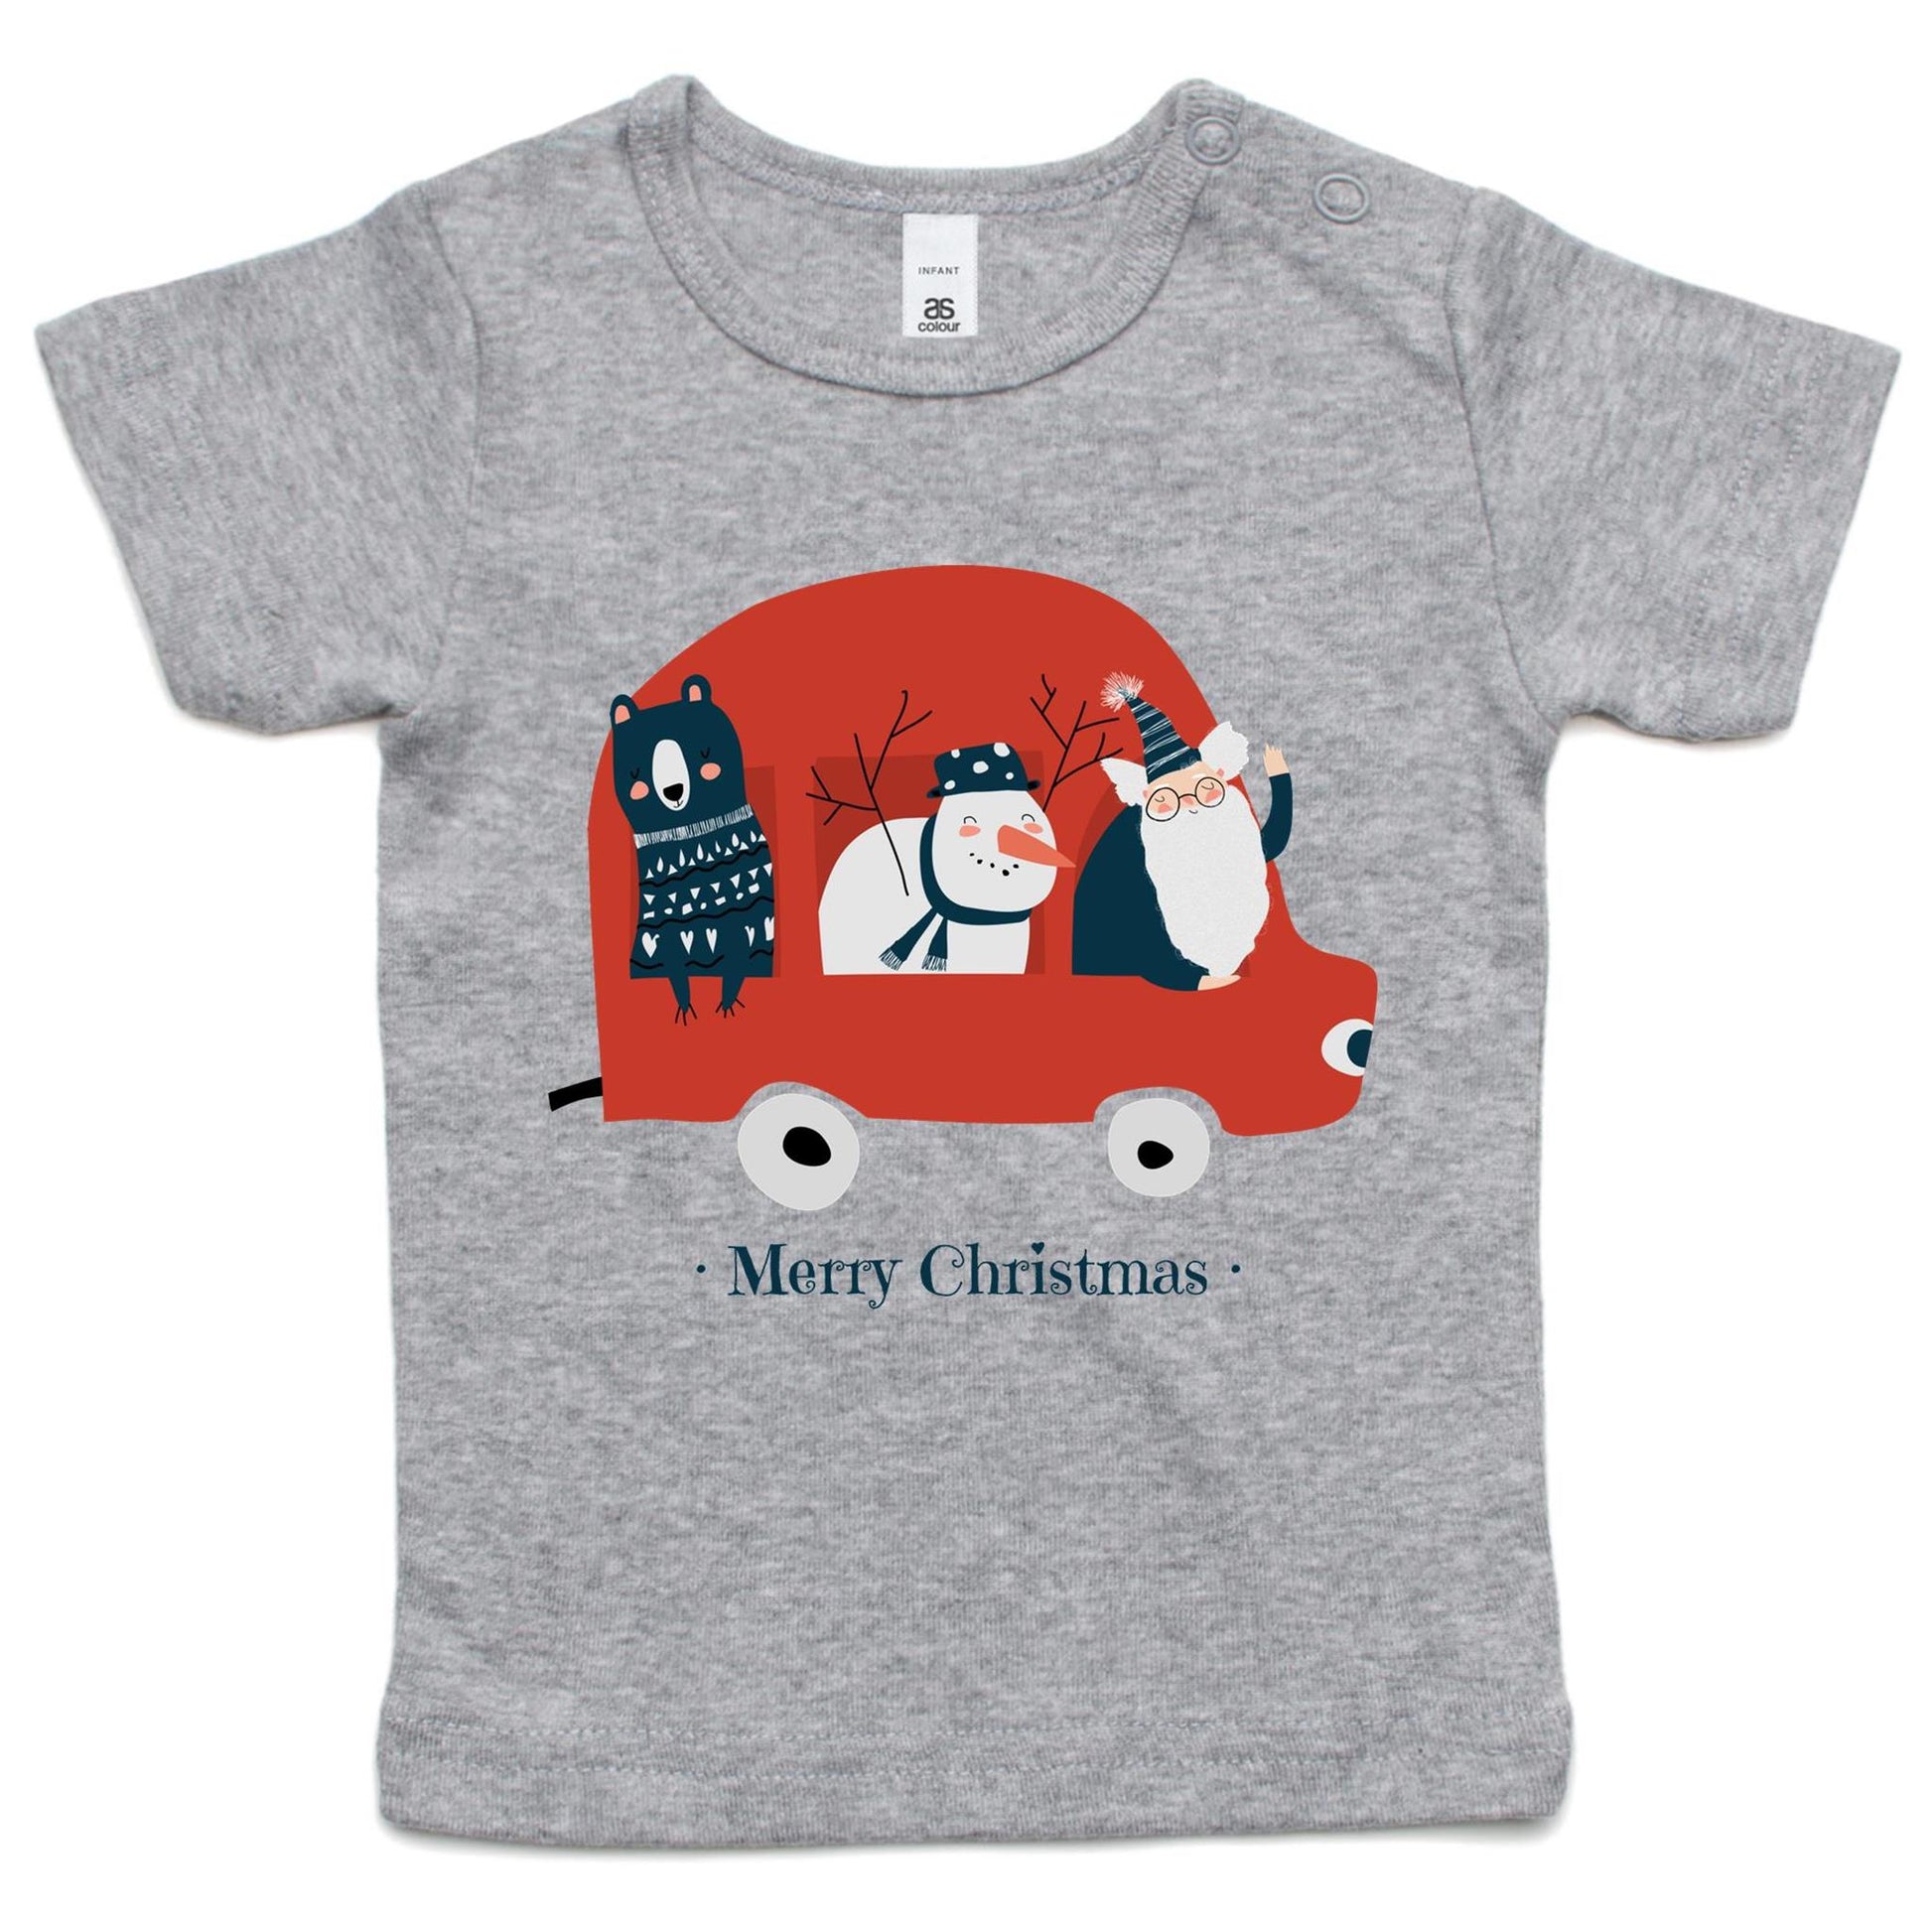 Santa Car - Baby T-shirt Grey Marle Christmas Baby T-shirt Merry Christmas